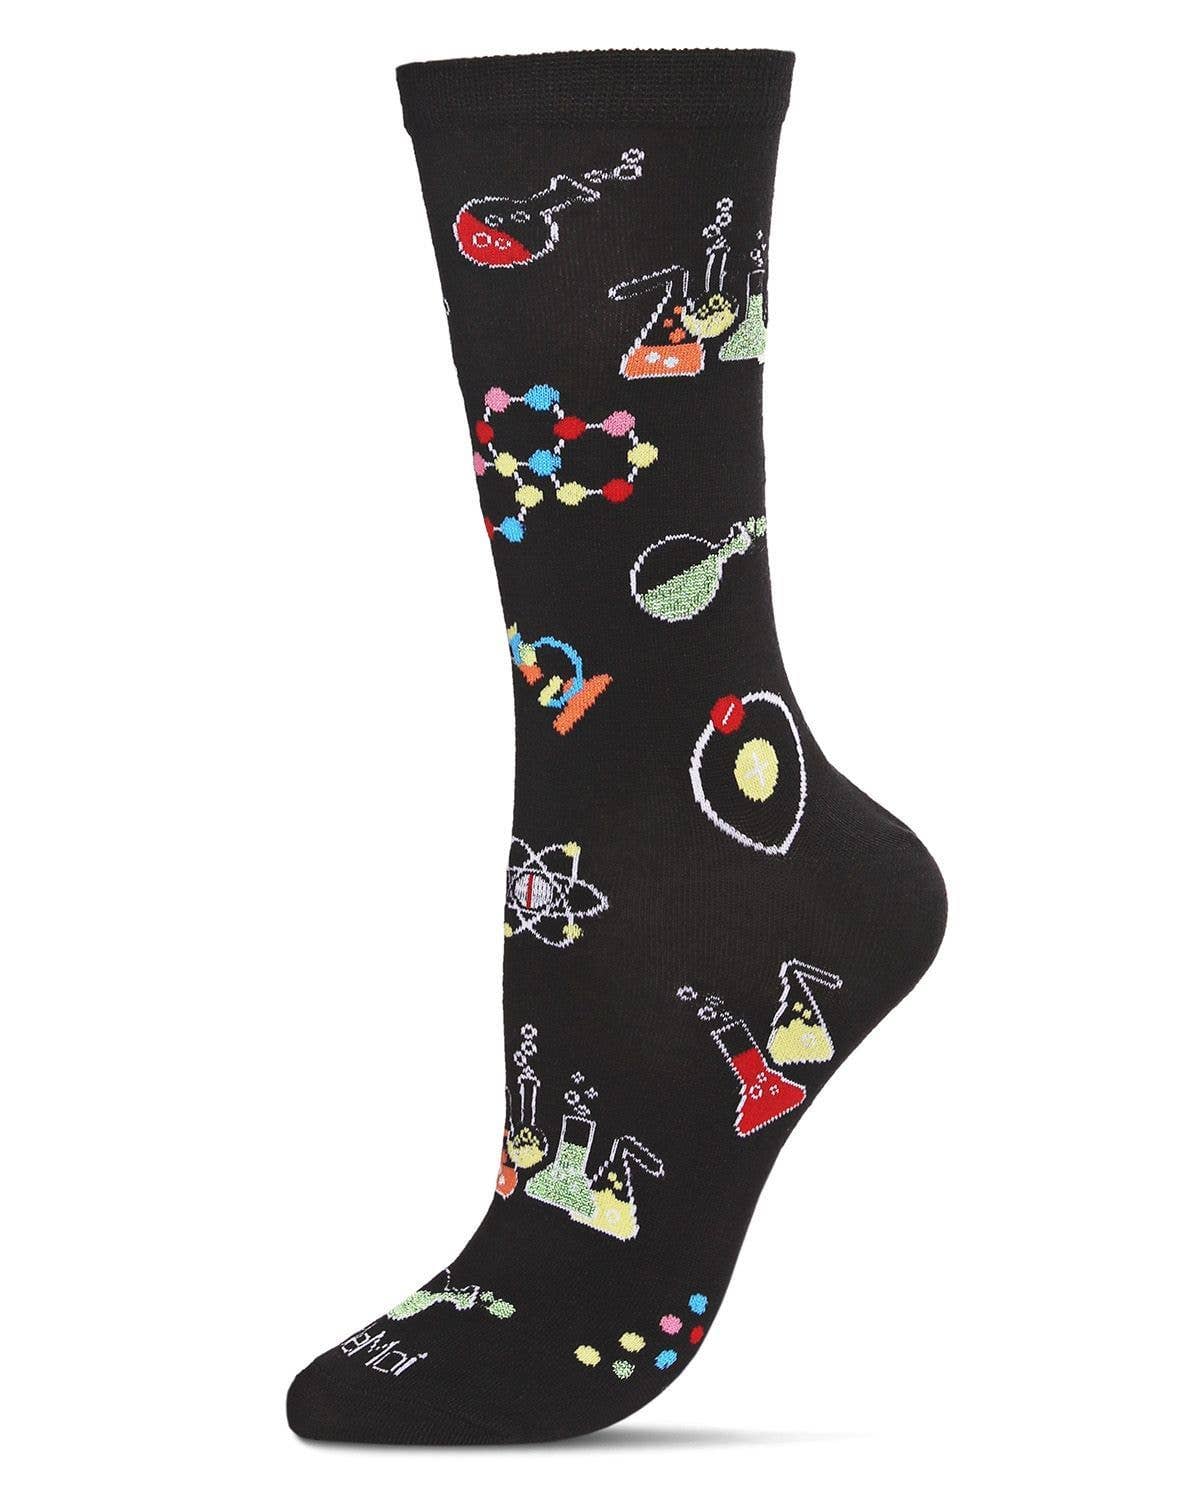 Men's Cool Science Geek Socks